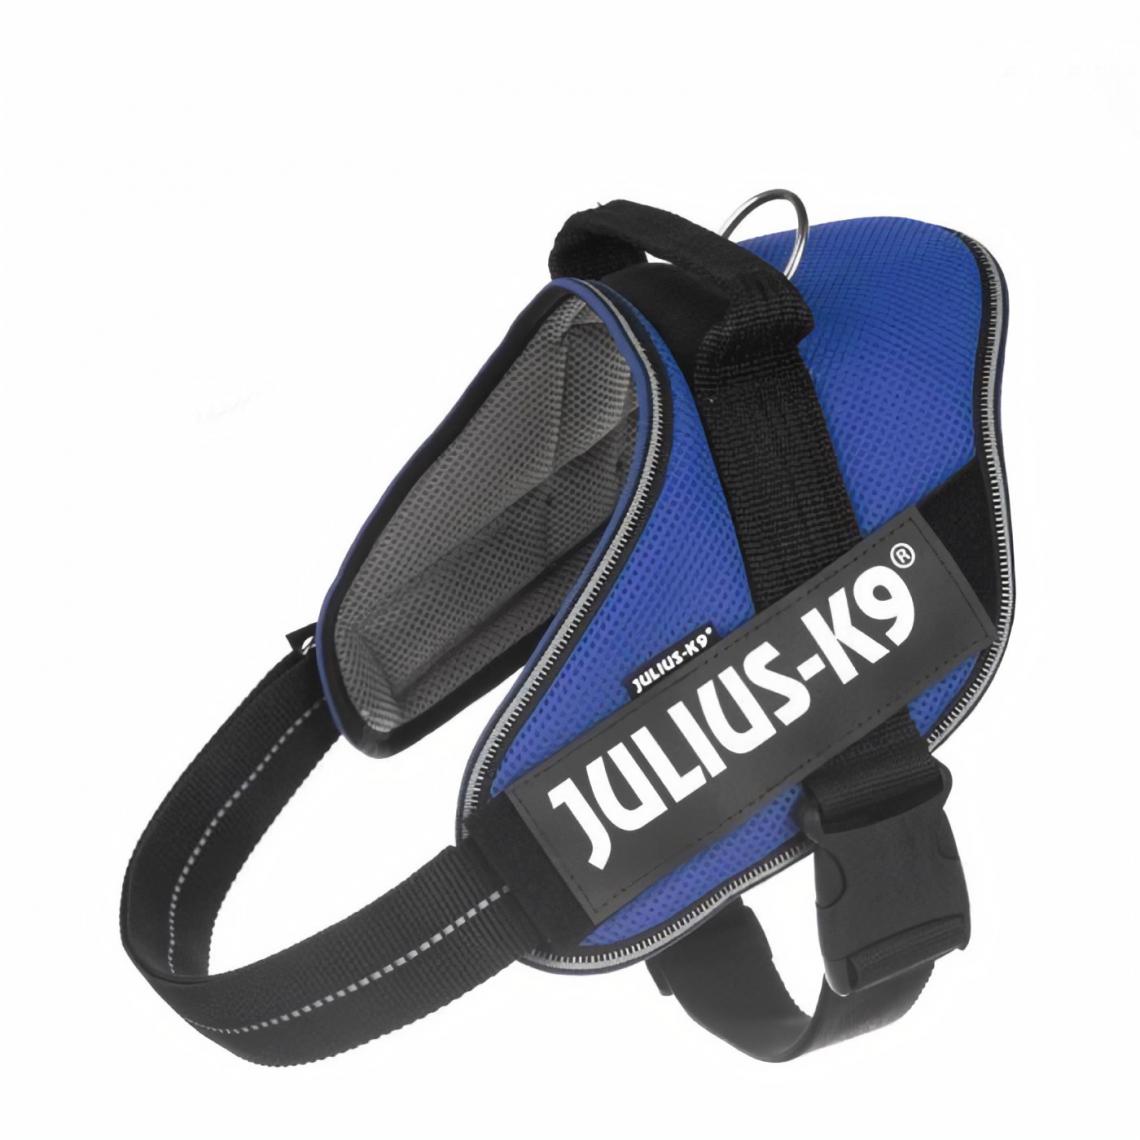 Julius K9 - Harnais été IDC POWair léger et rafraîchissant bleu XLARGE - Equipement de transport pour chien